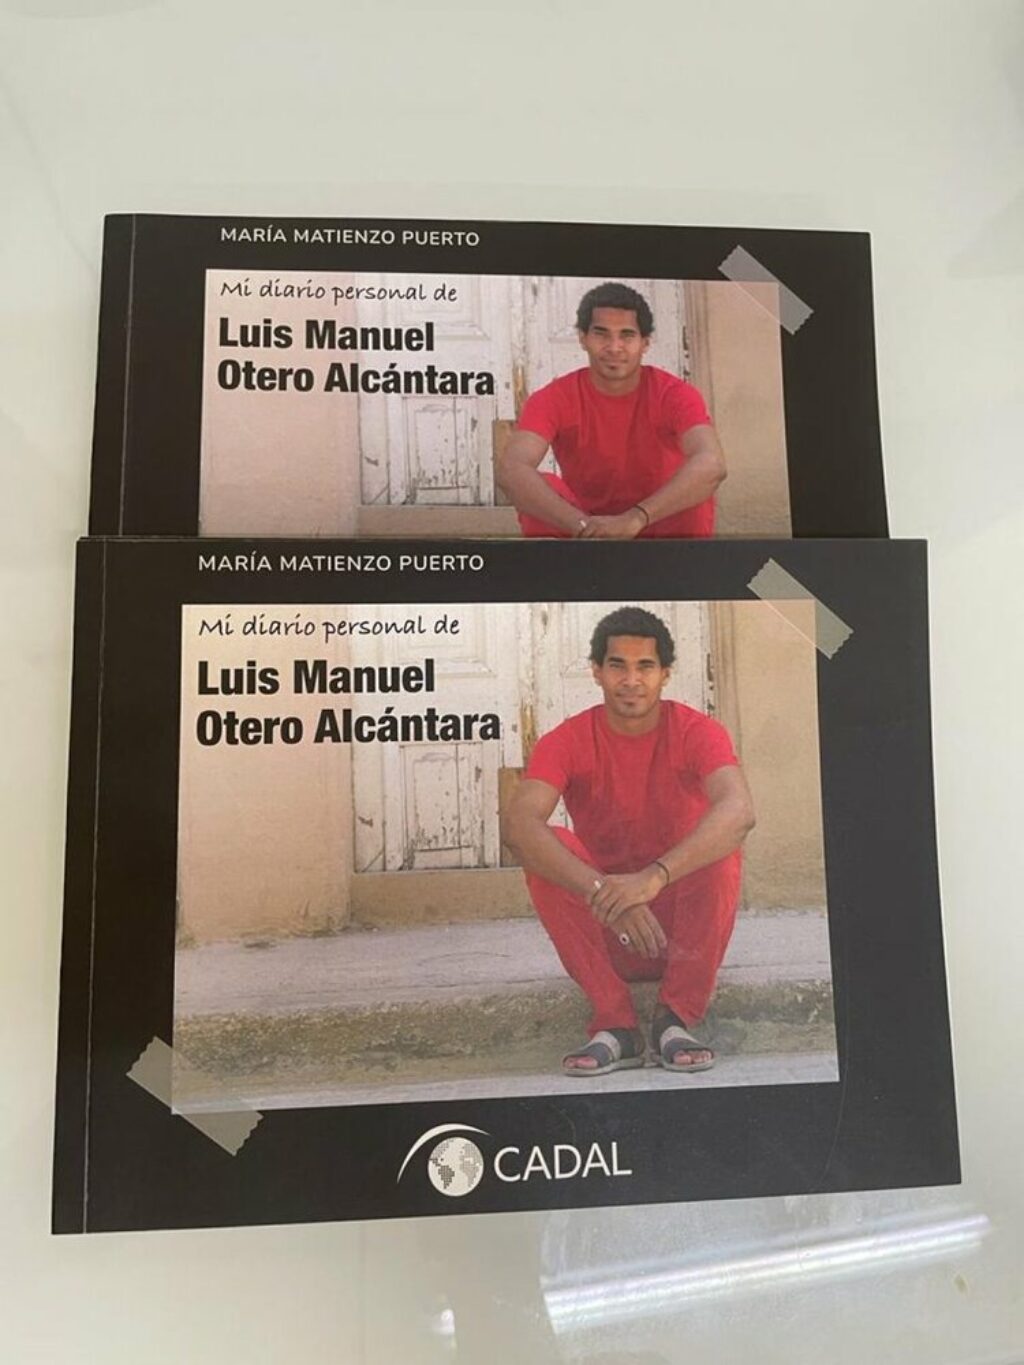 Portada del libro "Mi diario personal de Luis Manuel Otero Alcántara".